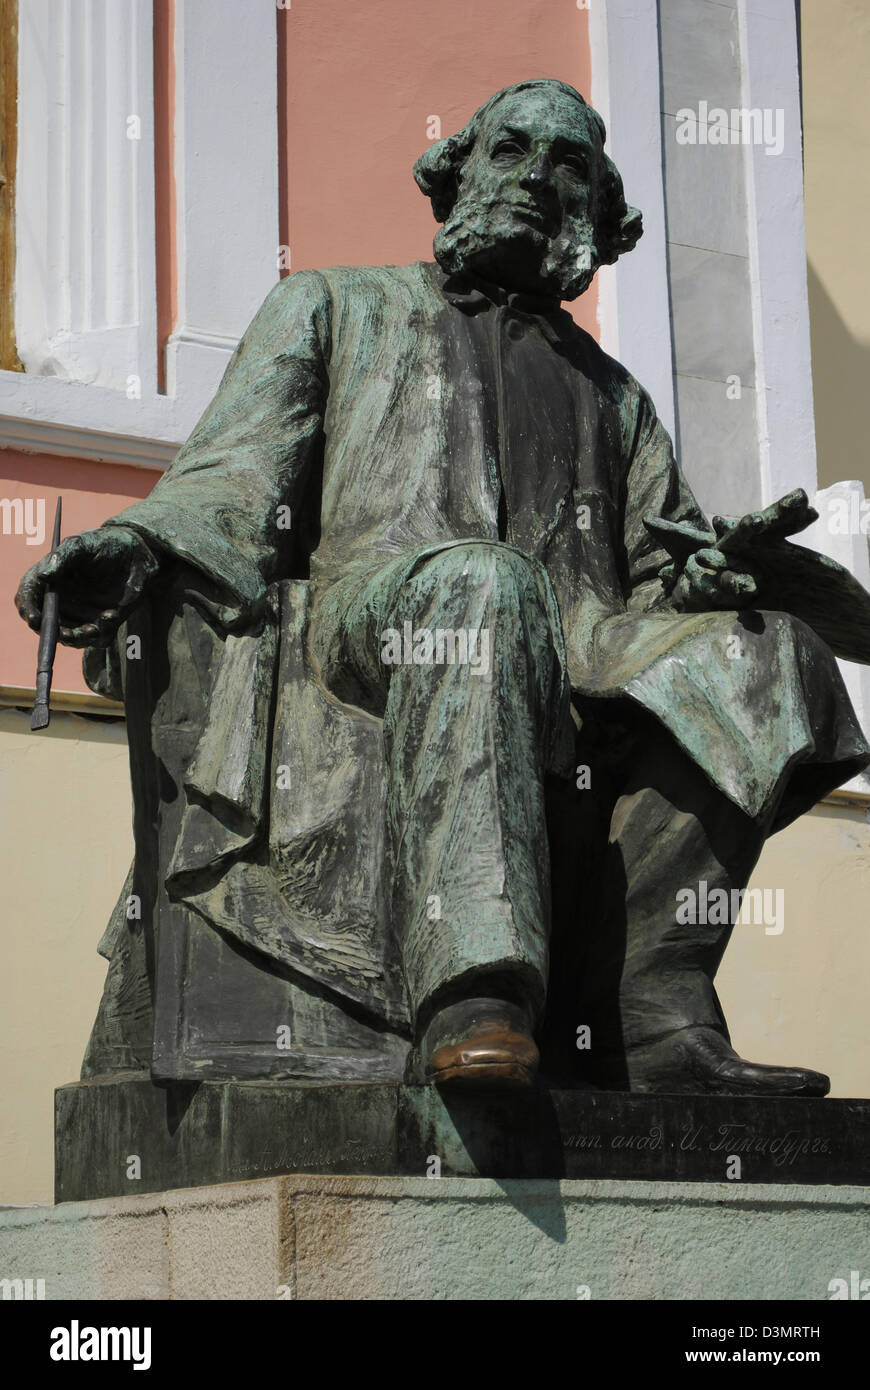 Ivan Aivazovsky (1817-1900). Pittore russo. La scultura vicino Aivazovsky Picture Gallery. Teodosia. L'Ucraina. Foto Stock